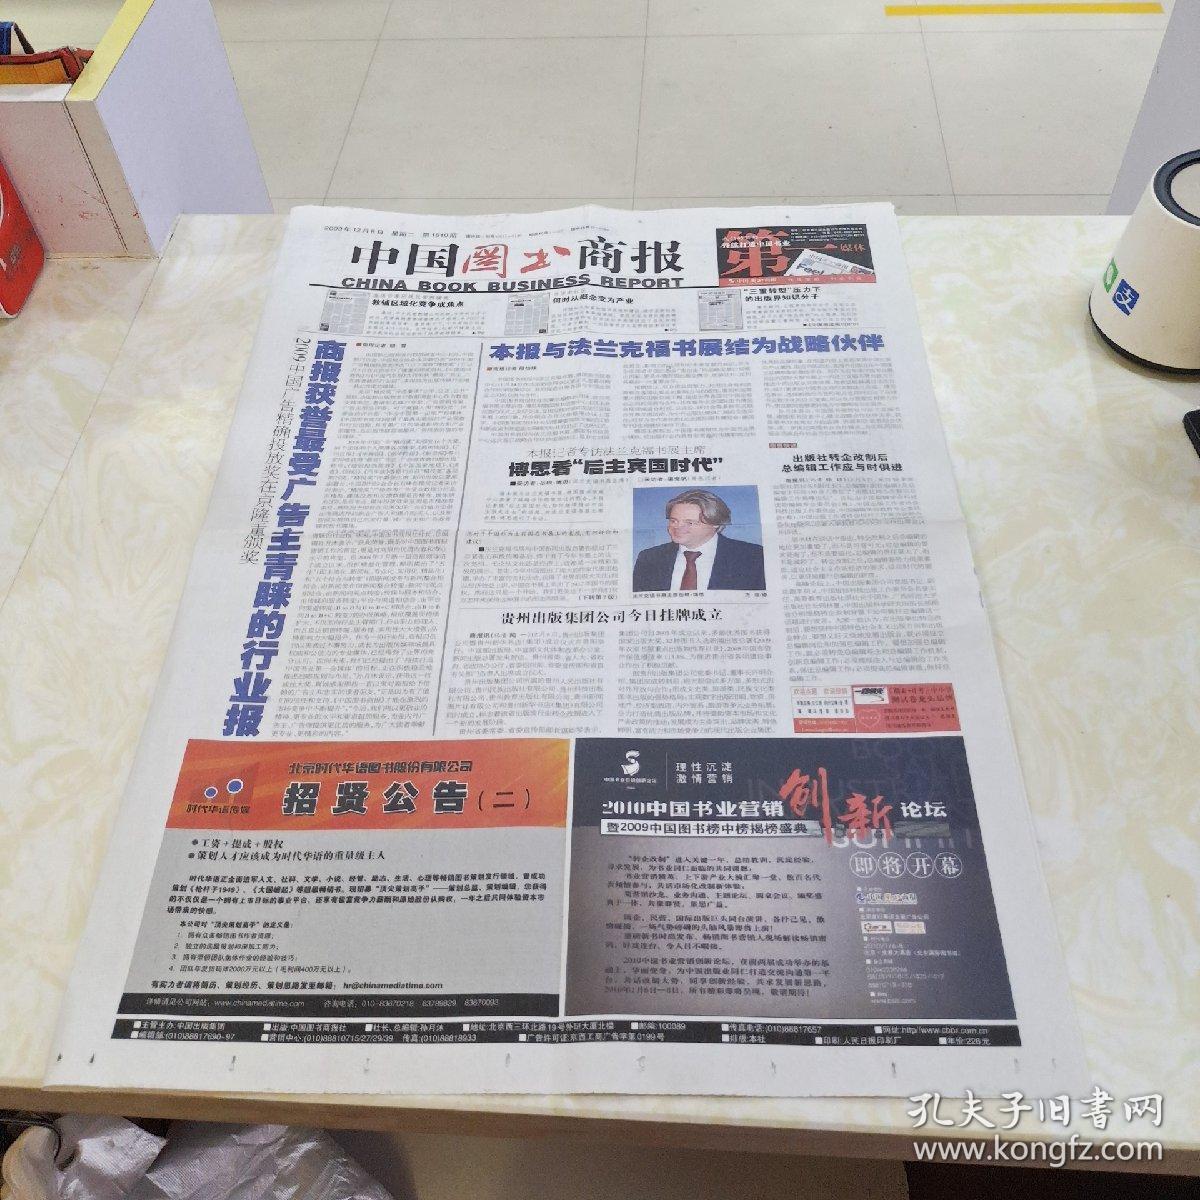 中国图书商报2009年12月8日（4开四版）
本报与法兰克福书展结为战略伙伴 
商报获誉最受广告主青睐的行业报